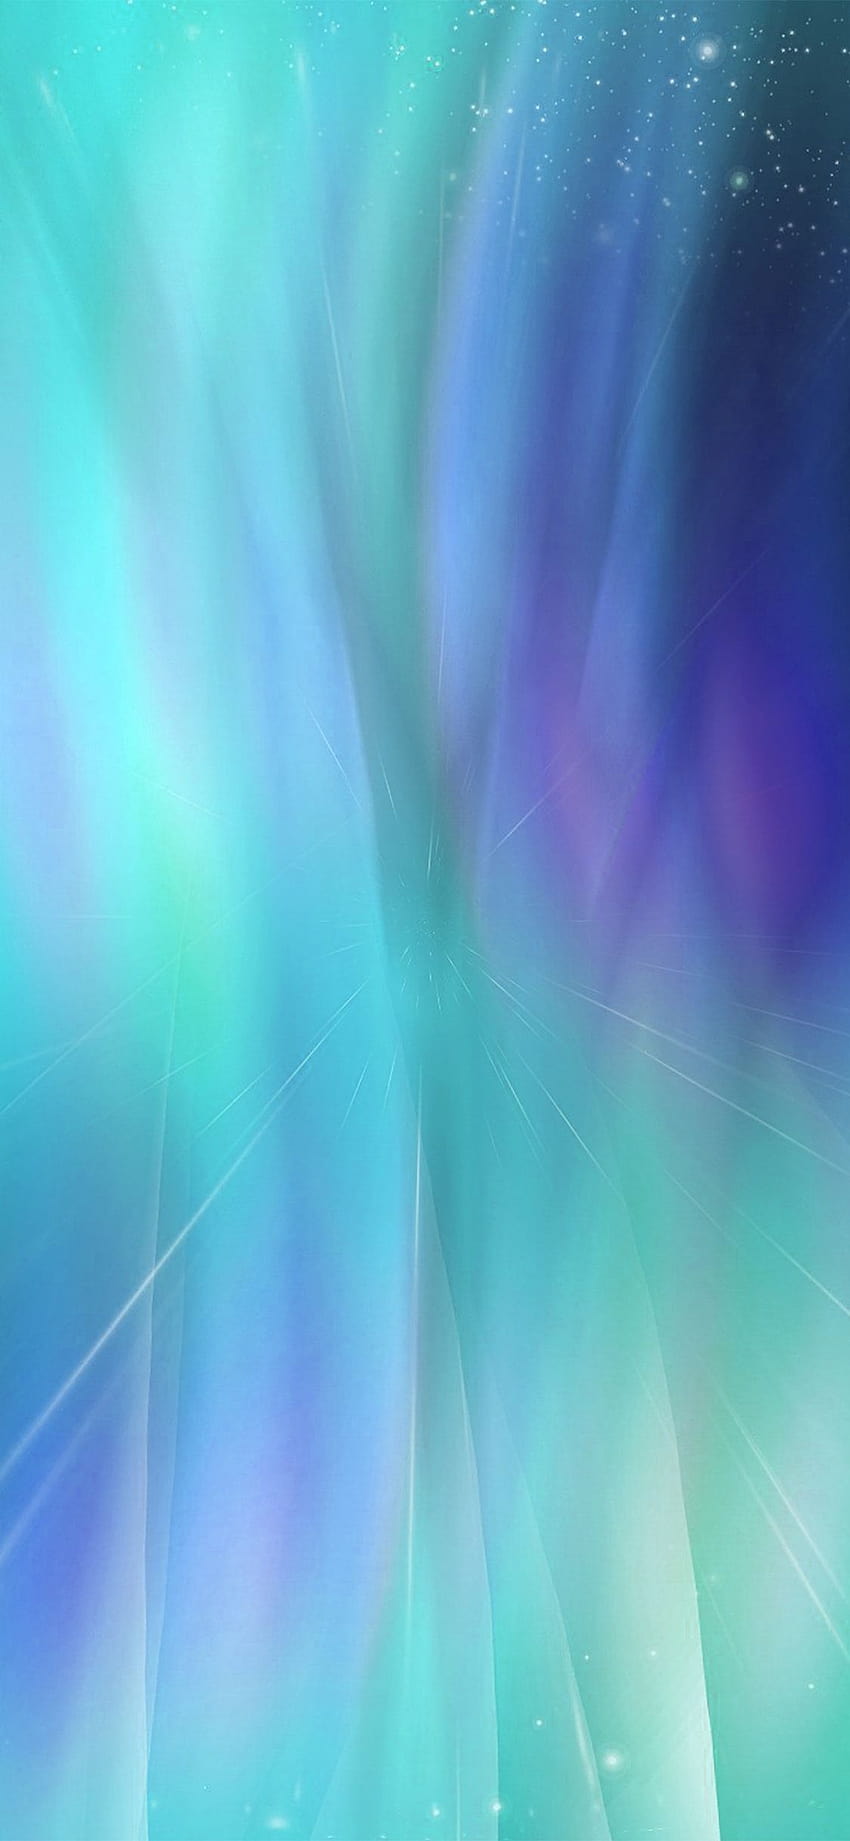 Hijau iPhone SE, hijau dan ungu wallpaper ponsel HD